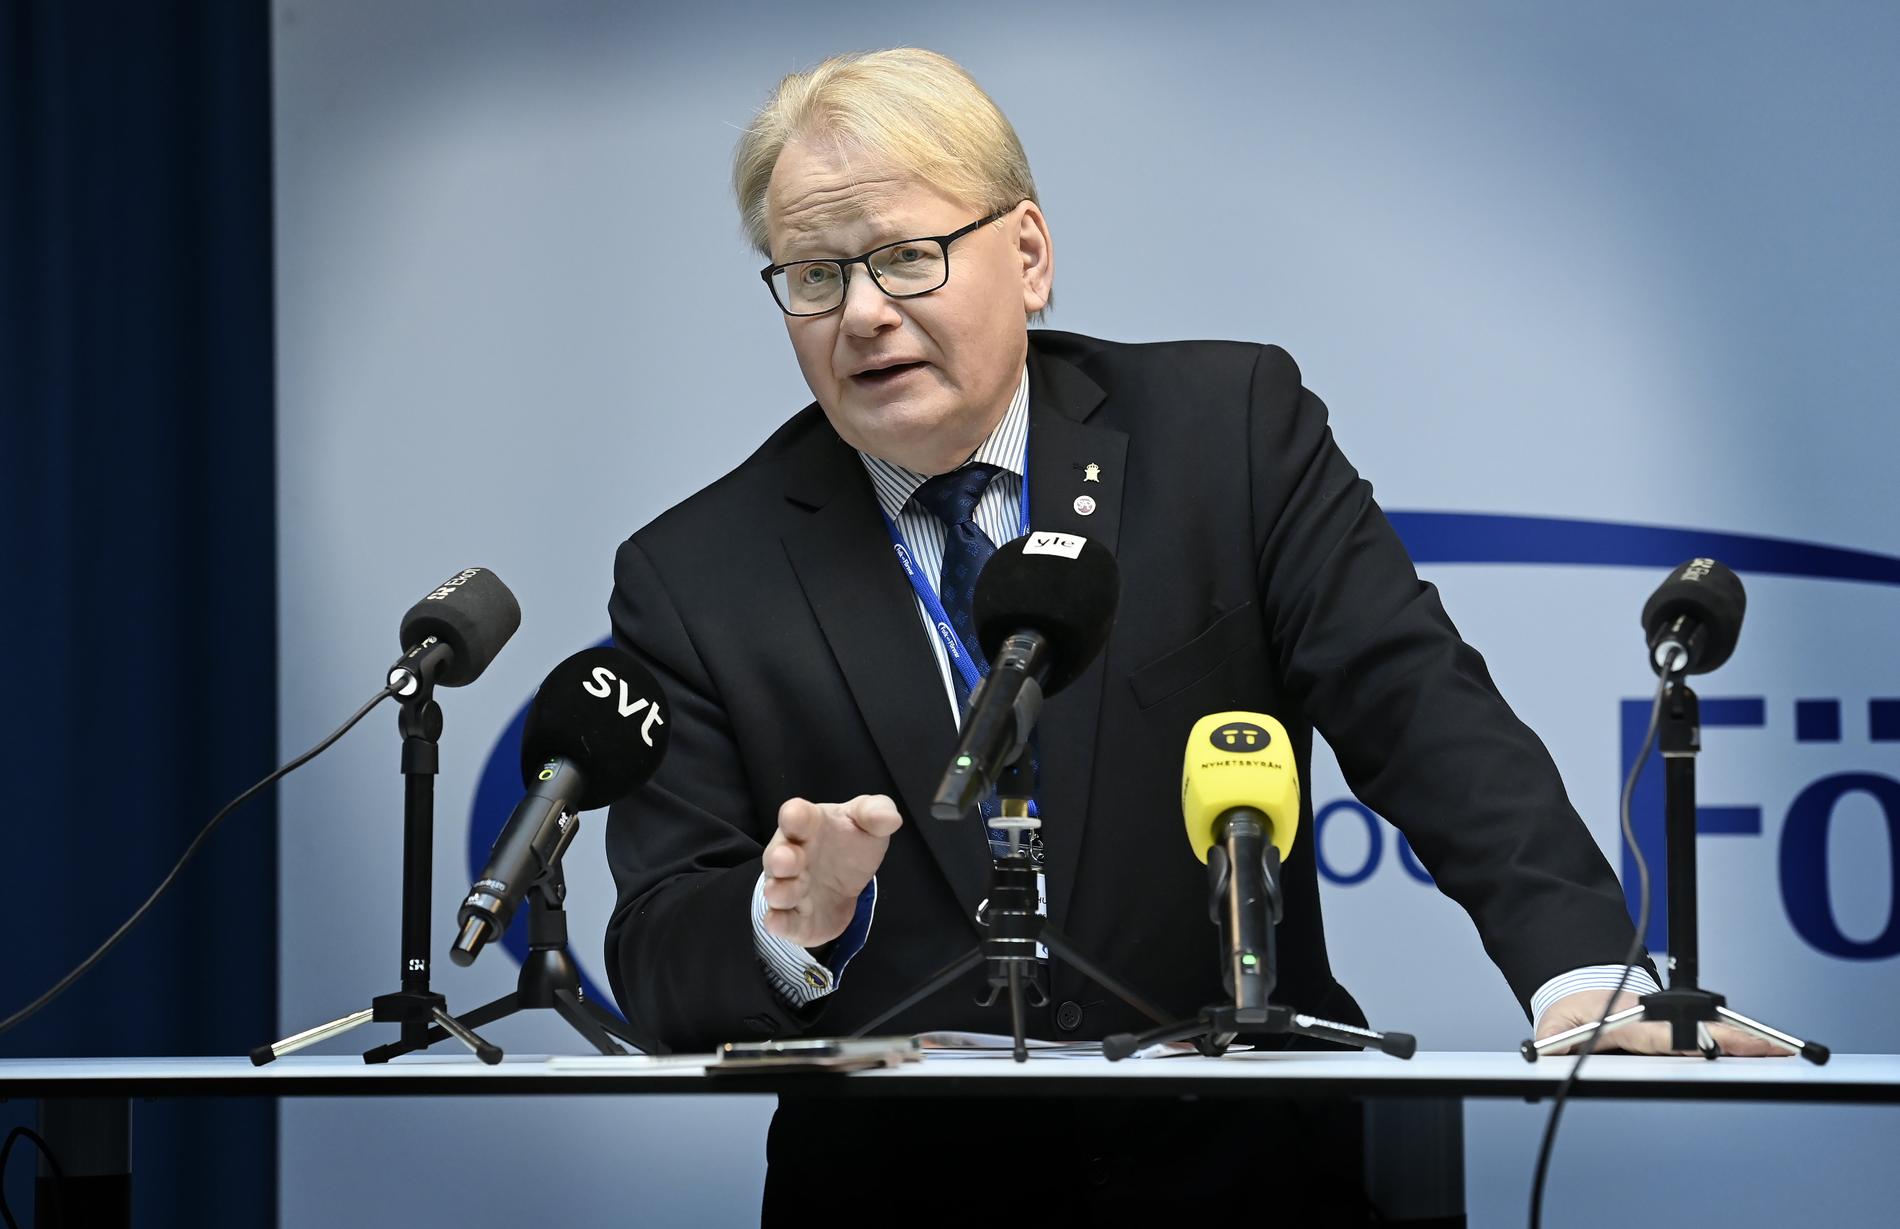 Försvarsminister Peter Hultqvist (S) på Folk och försvars rikskonferens i Stockholm.